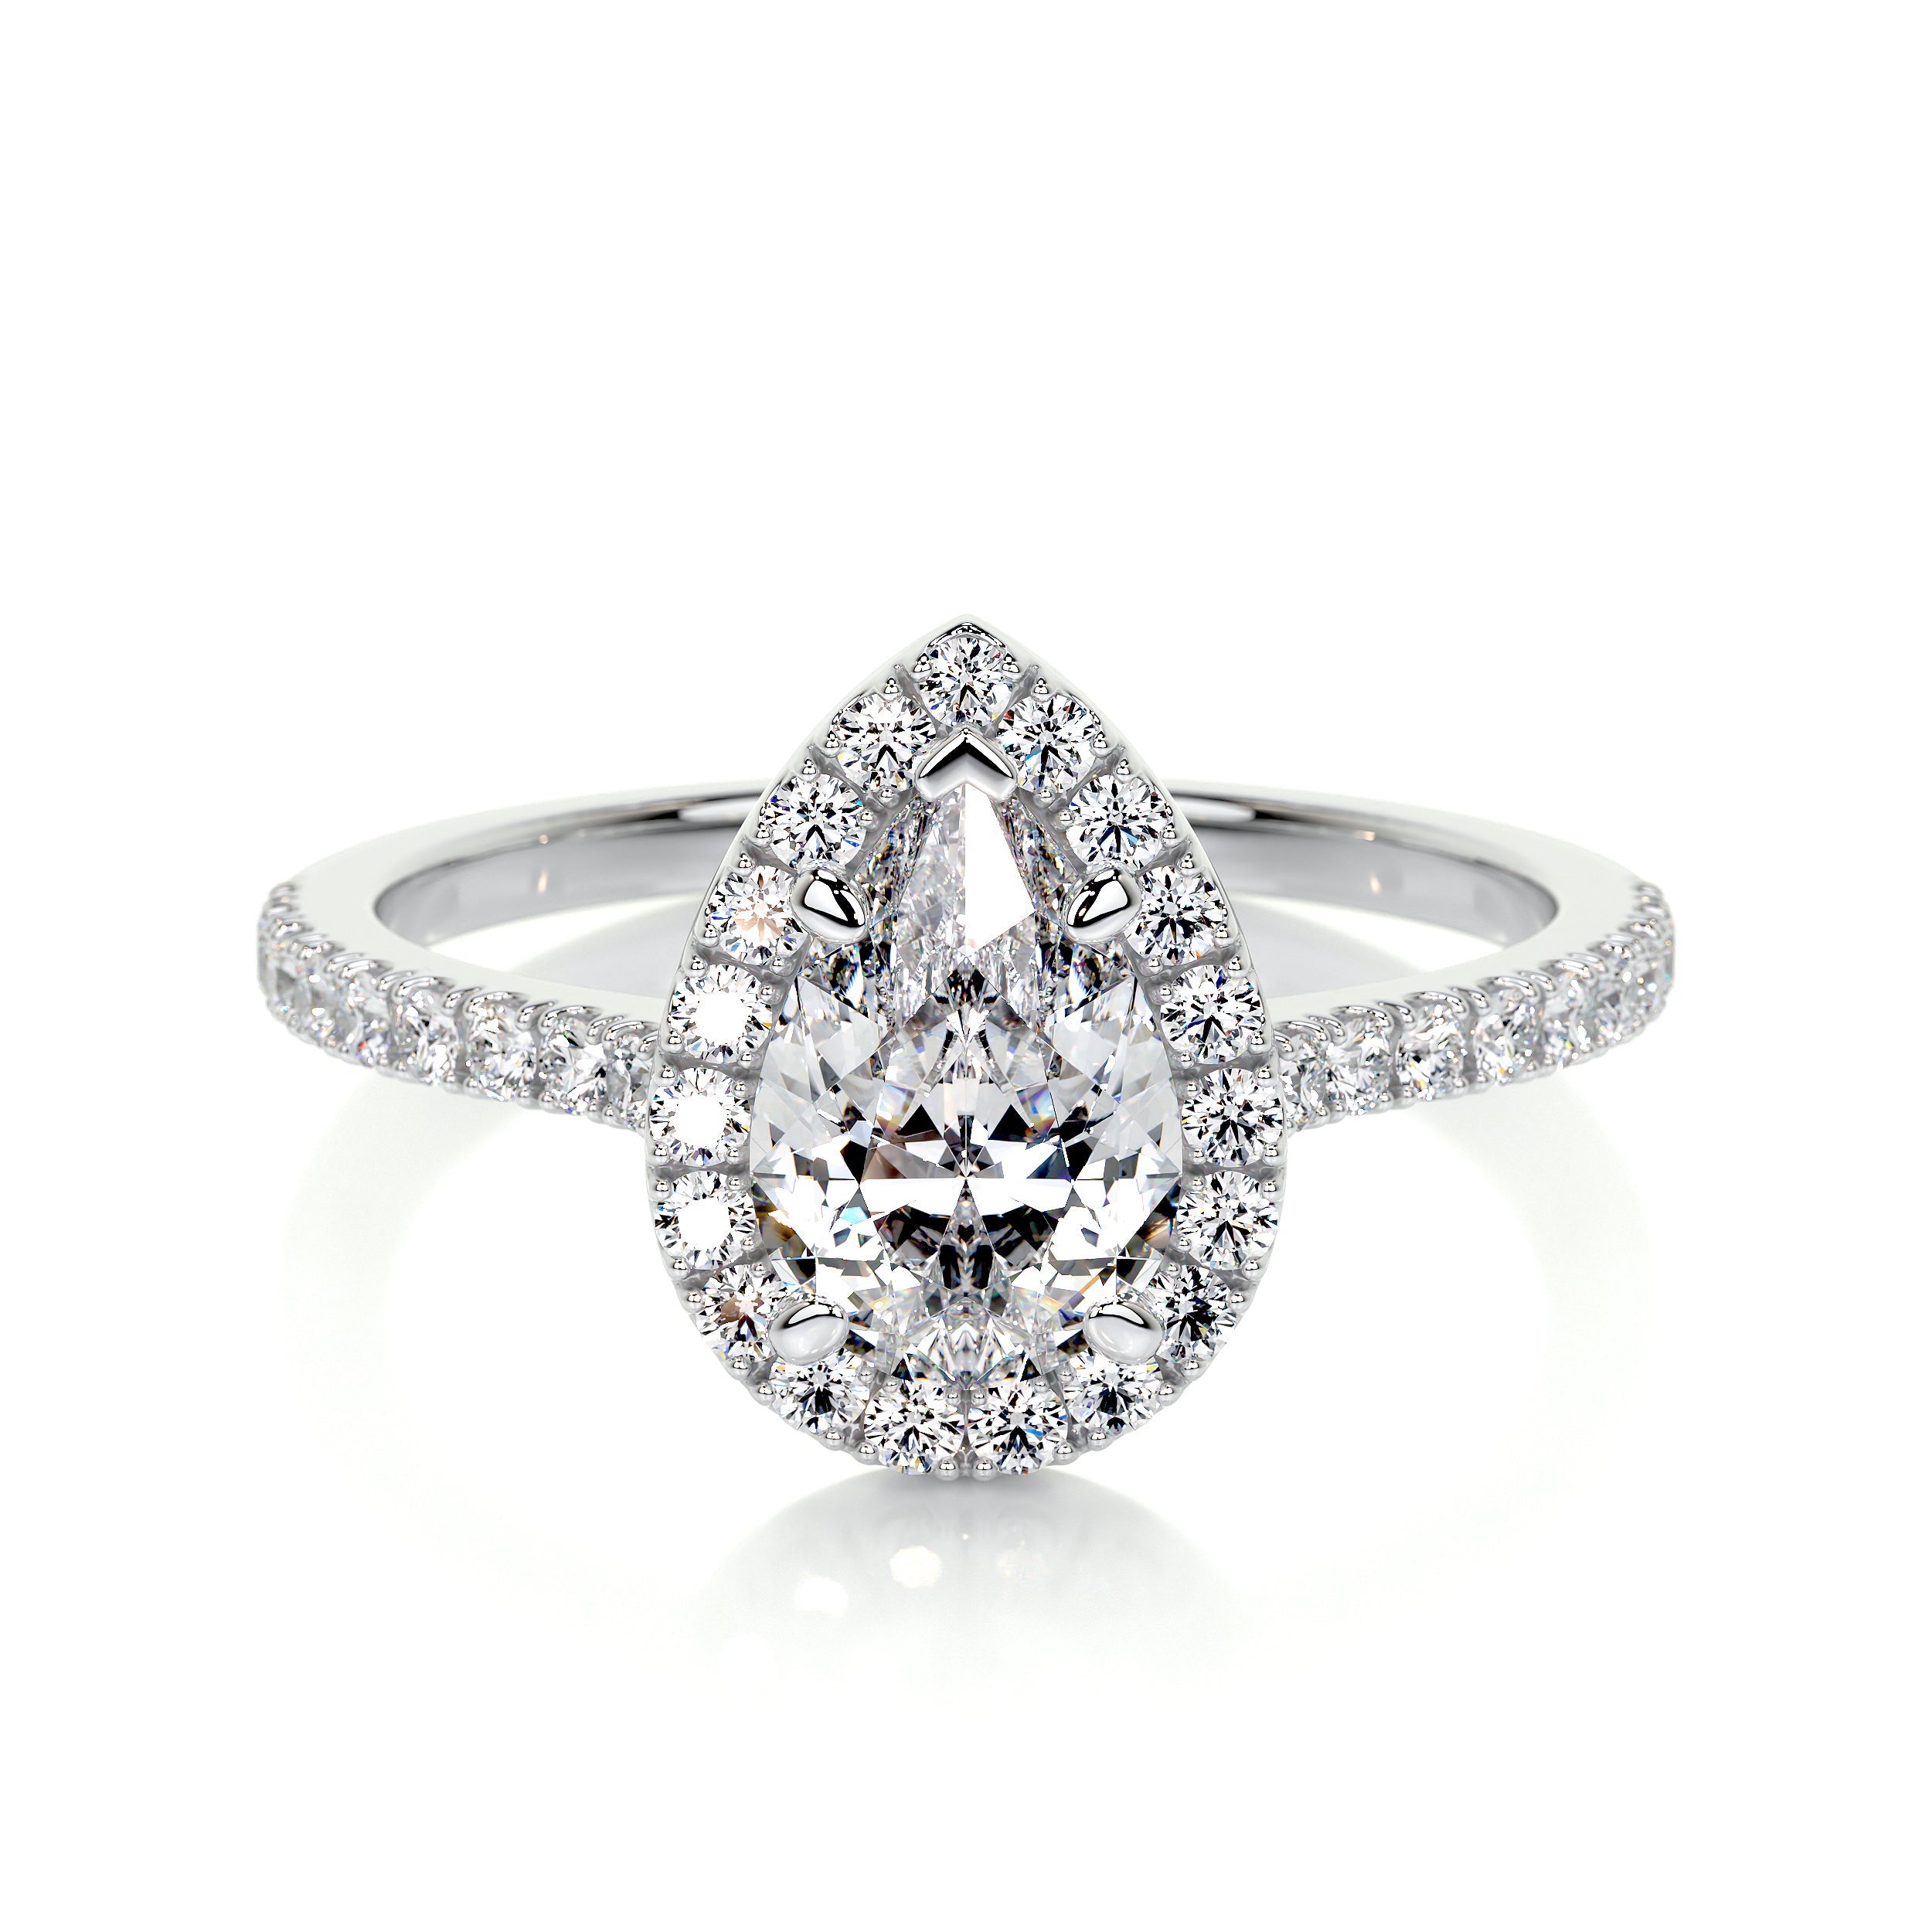 Sophia Lab Grown Diamond Ring   (1.50 Carat) -14K White Gold